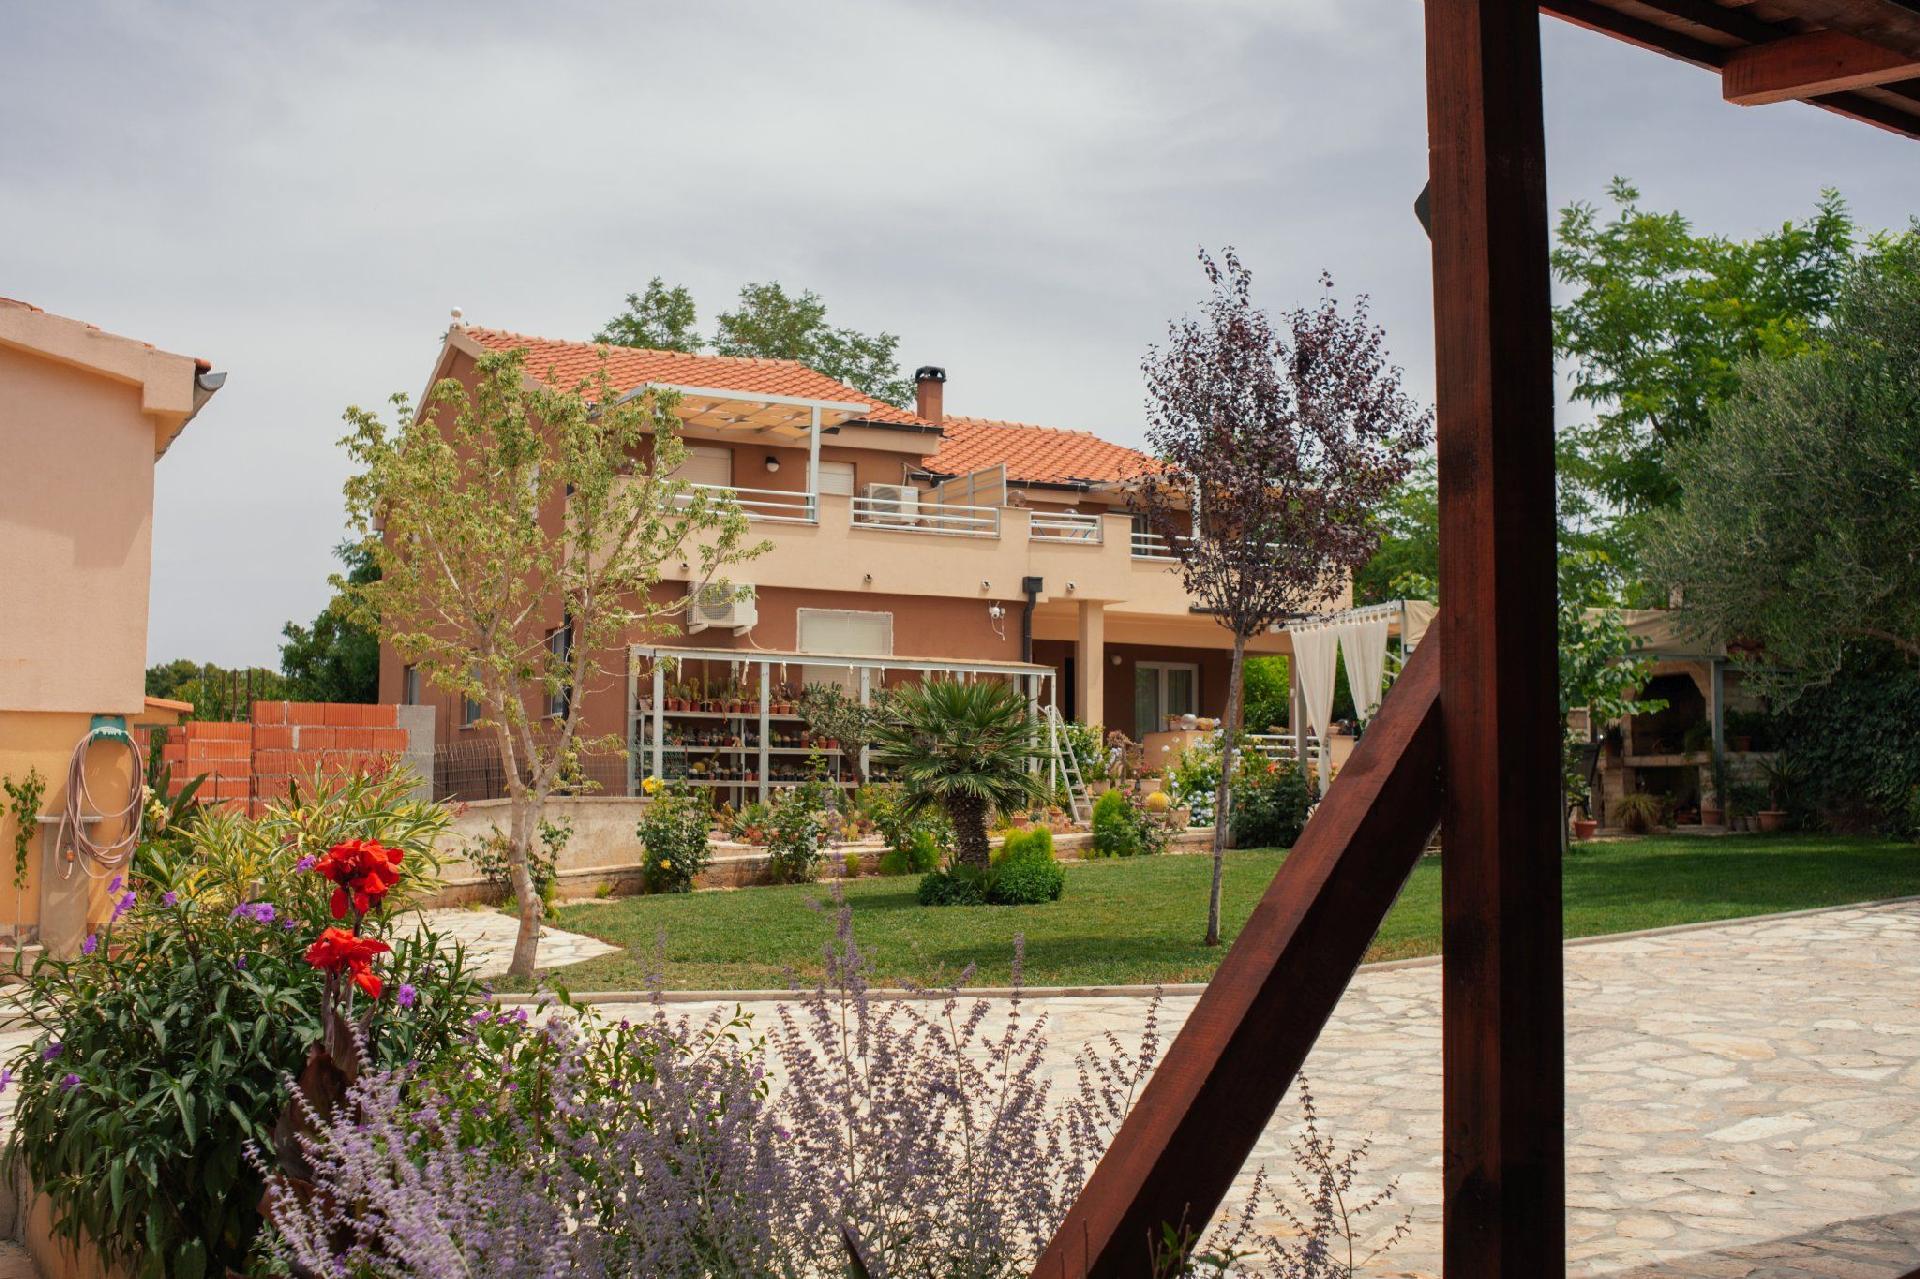 Ferienwohnung mit Terrasse im Erdgeschoss Ferienhaus in Kroatien